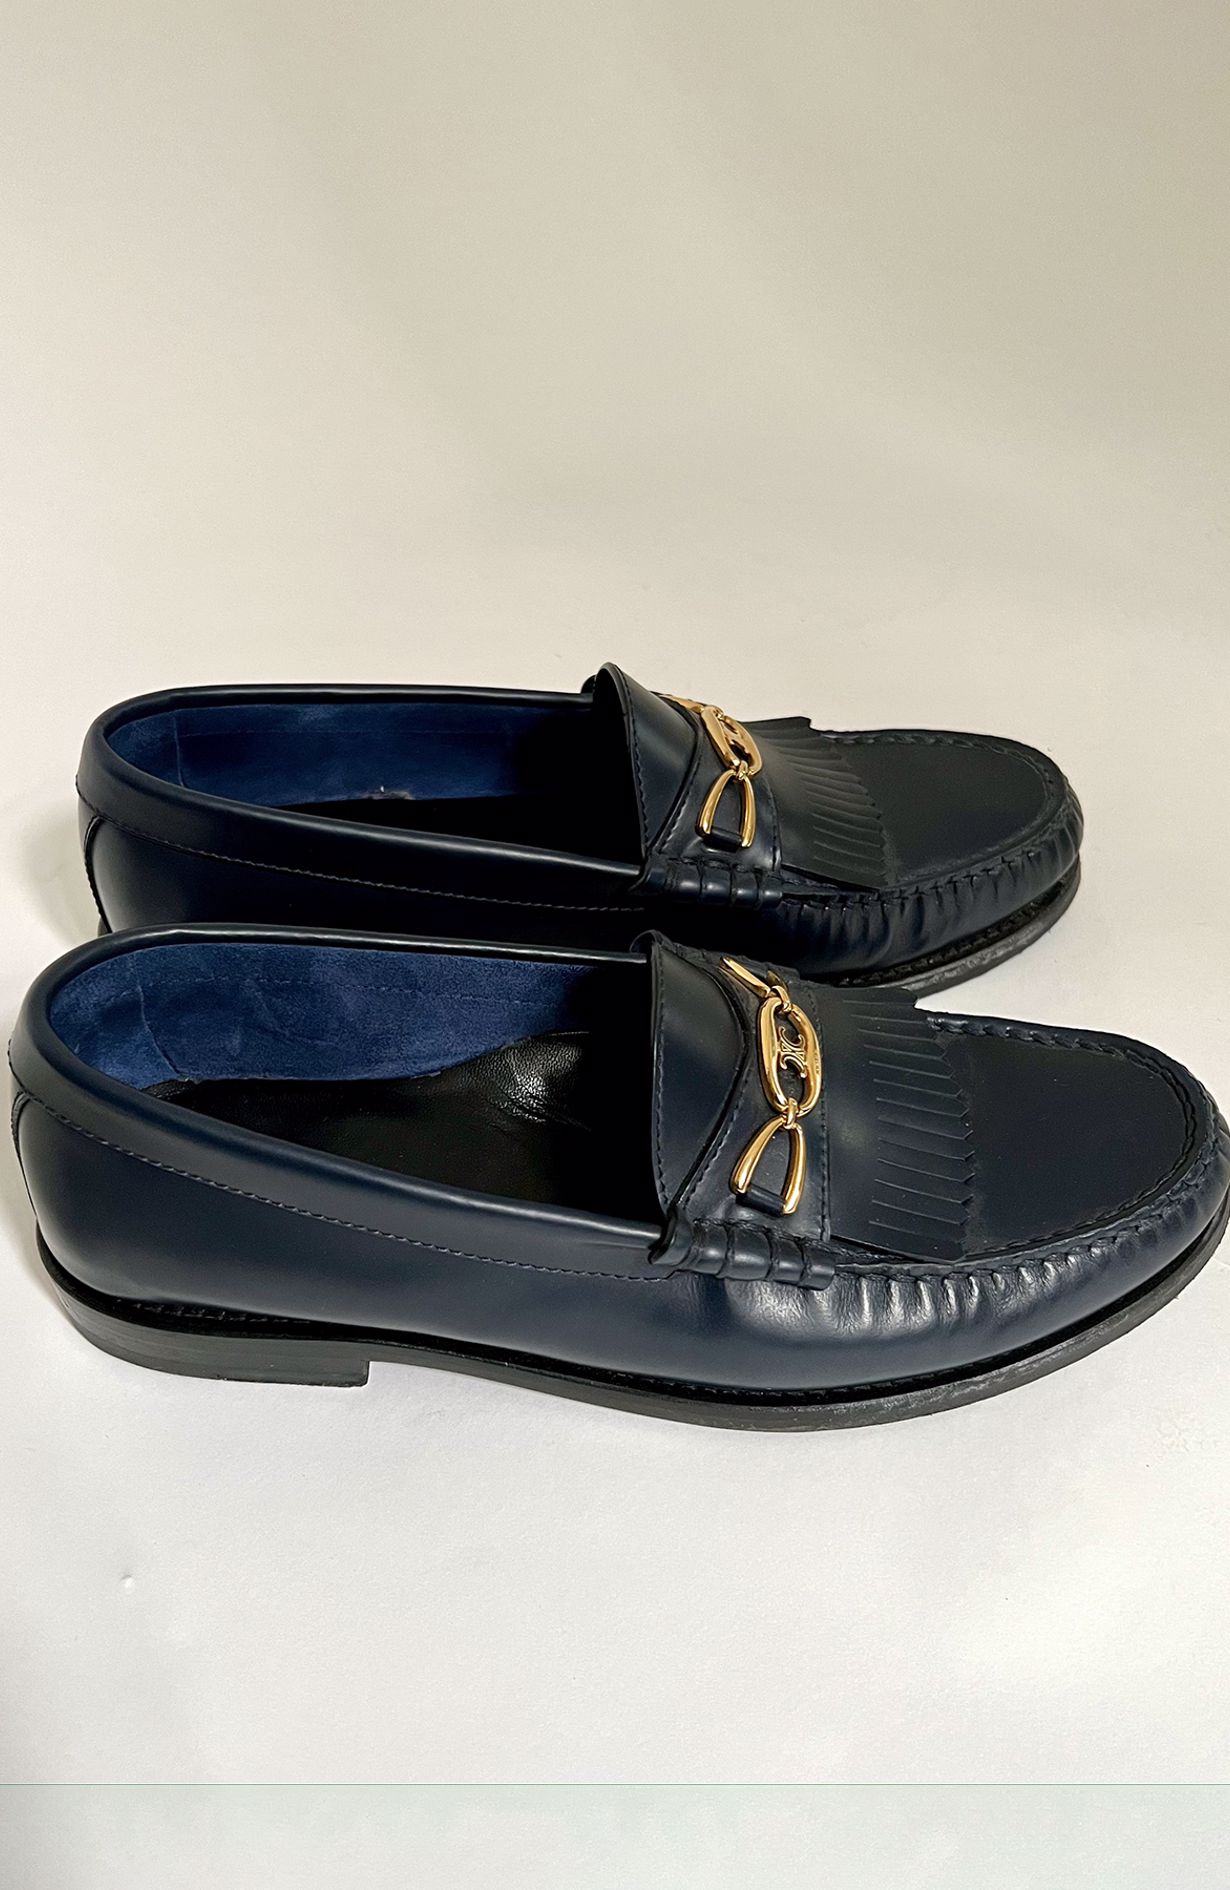 Celine Navy Loafers - Size 36